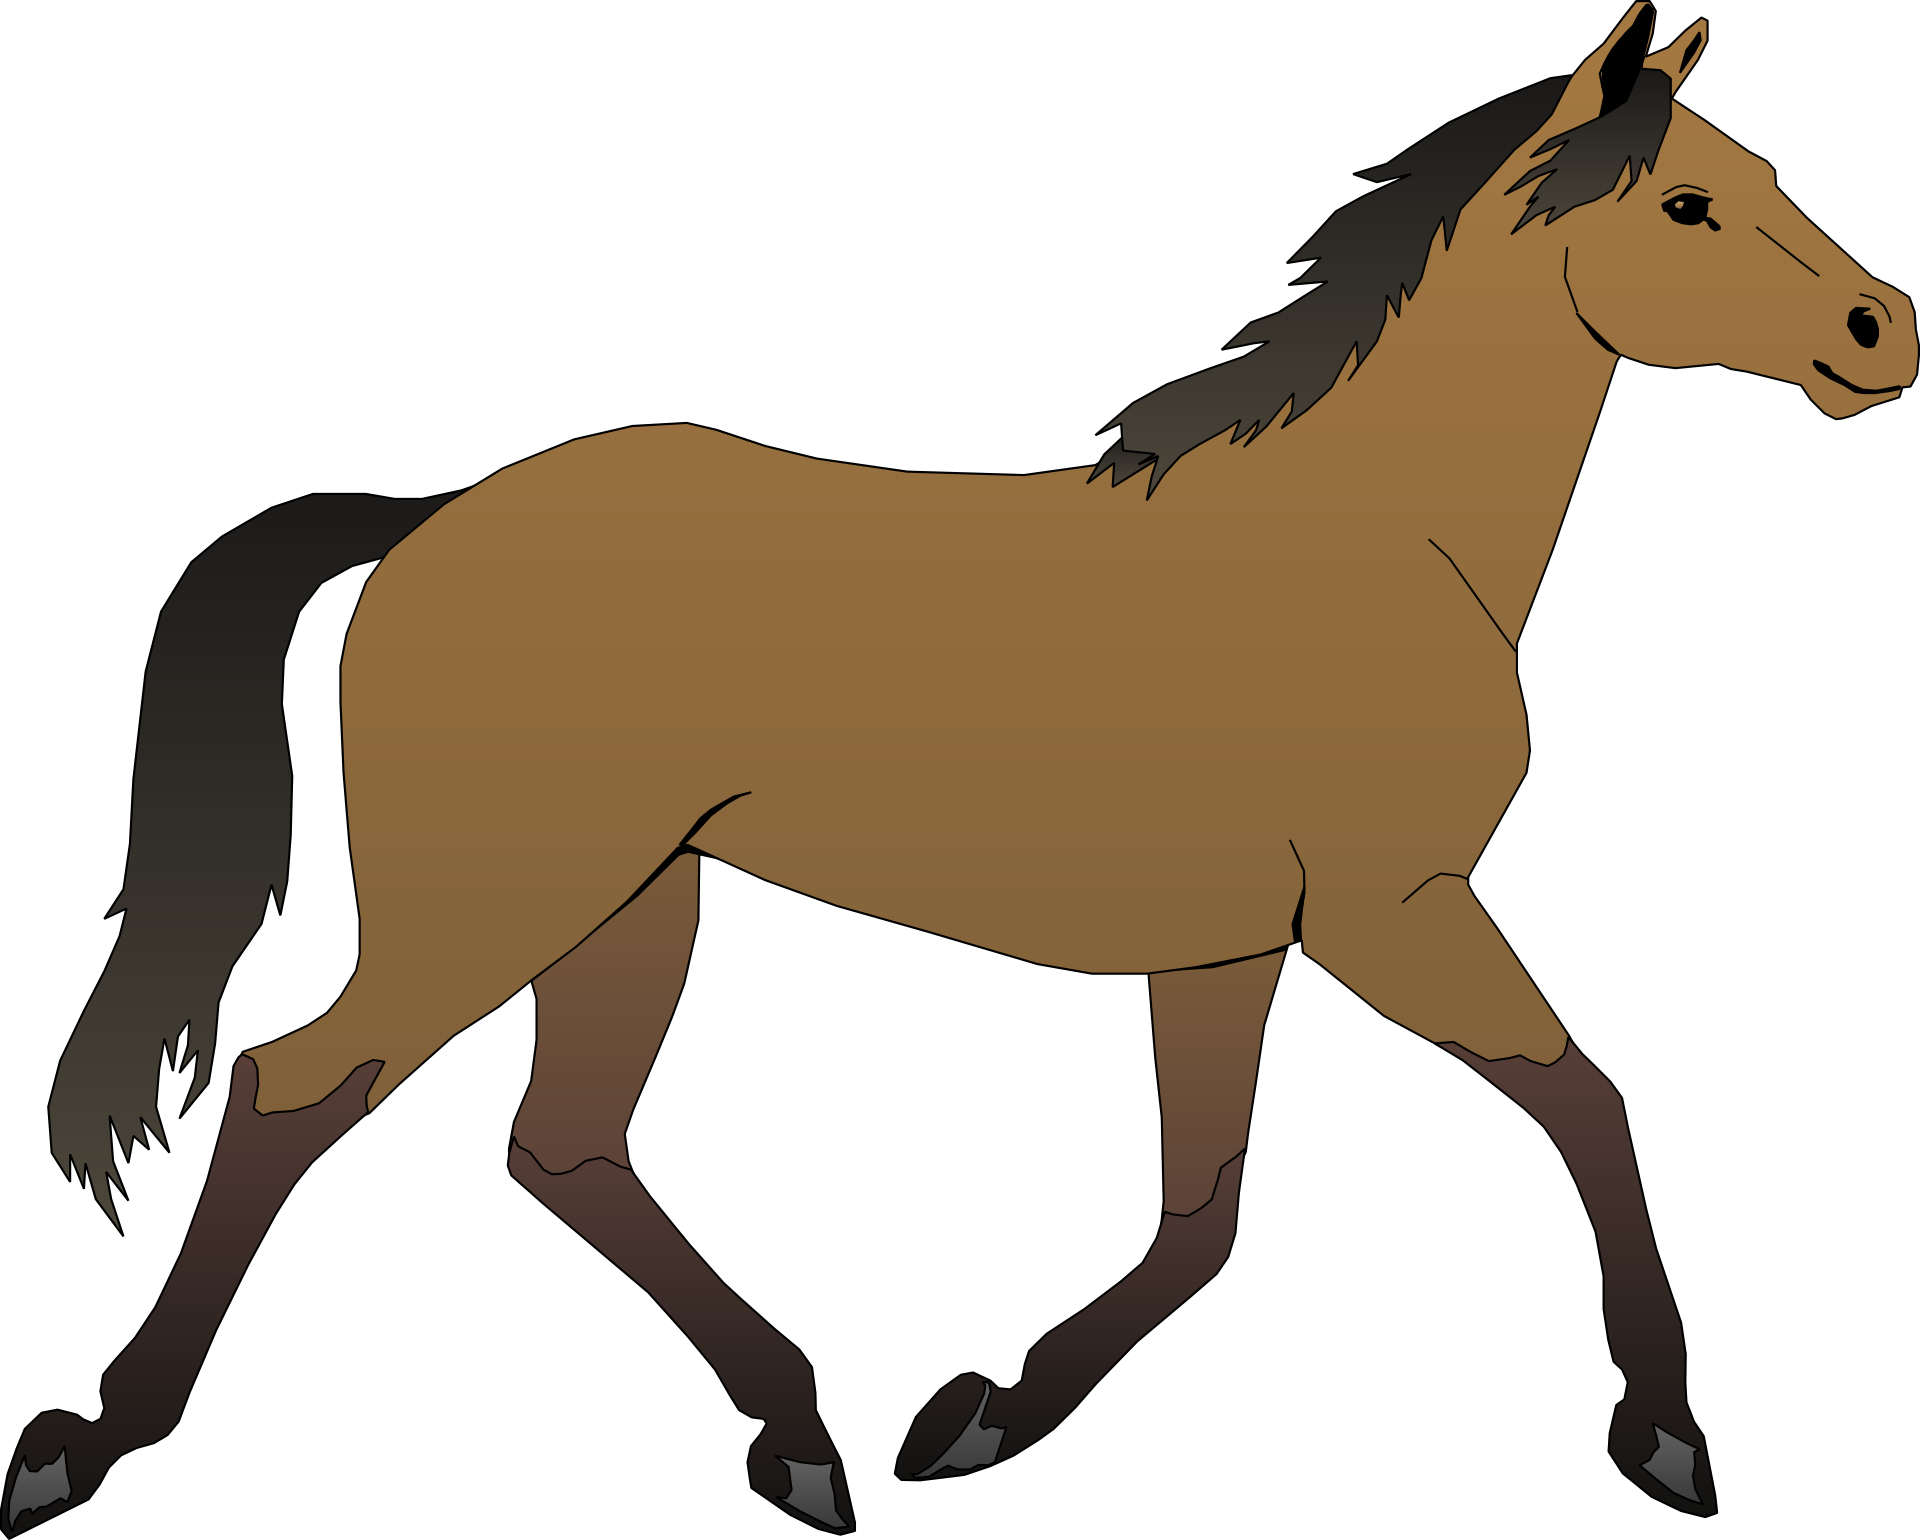 (http://www.dailyfreepsd.com/wp-content/uploads/2013/06/brown-cartoon-horse-.jpg)